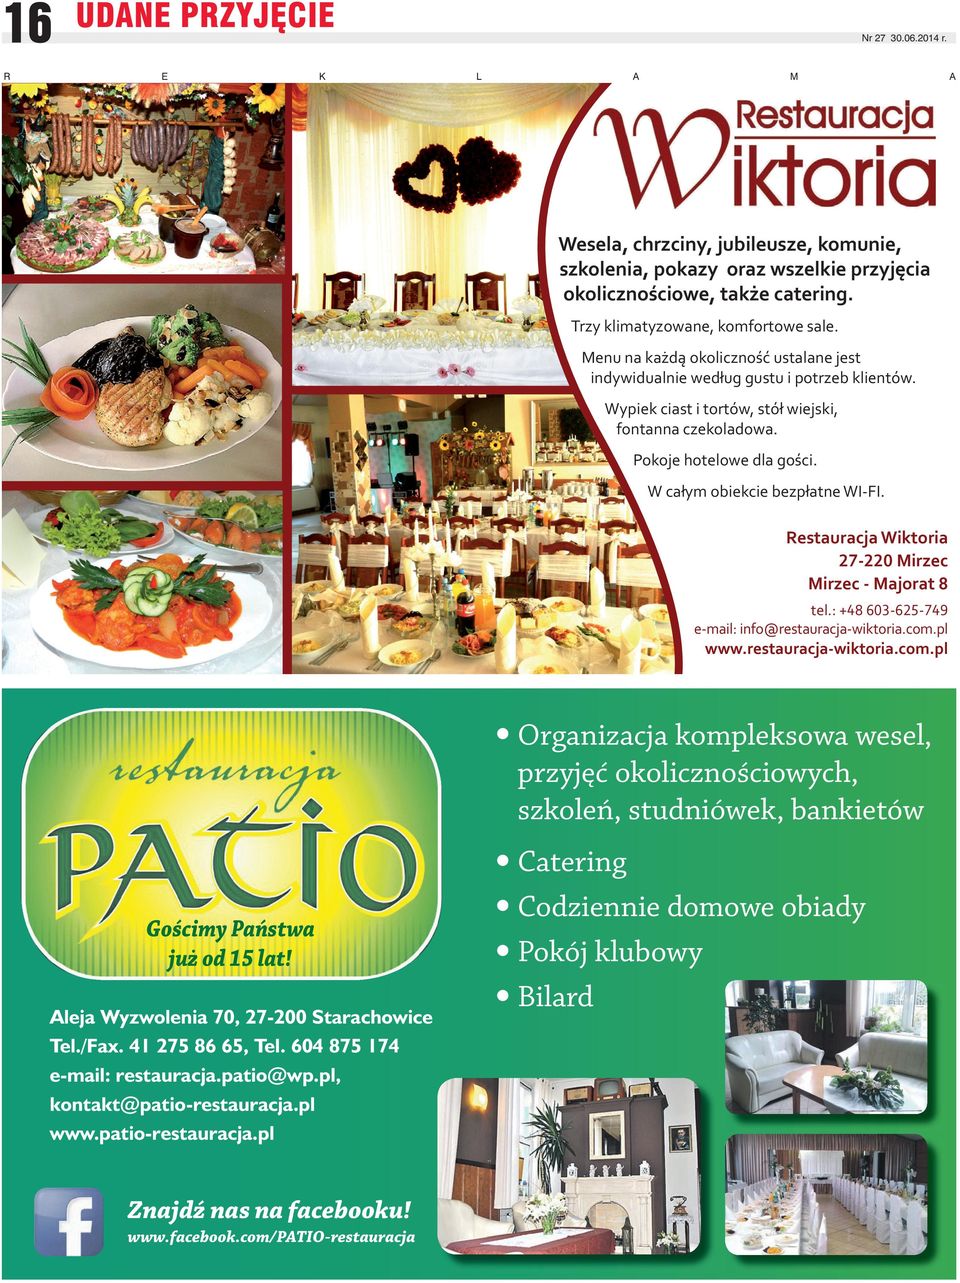 W całym obiekcie bezpłatne WI-FI. Restauracja Wiktoria - Mirzec Mirzec - Majorat tel.: + - - e-mail: info@restauracja-wiktoria.com.